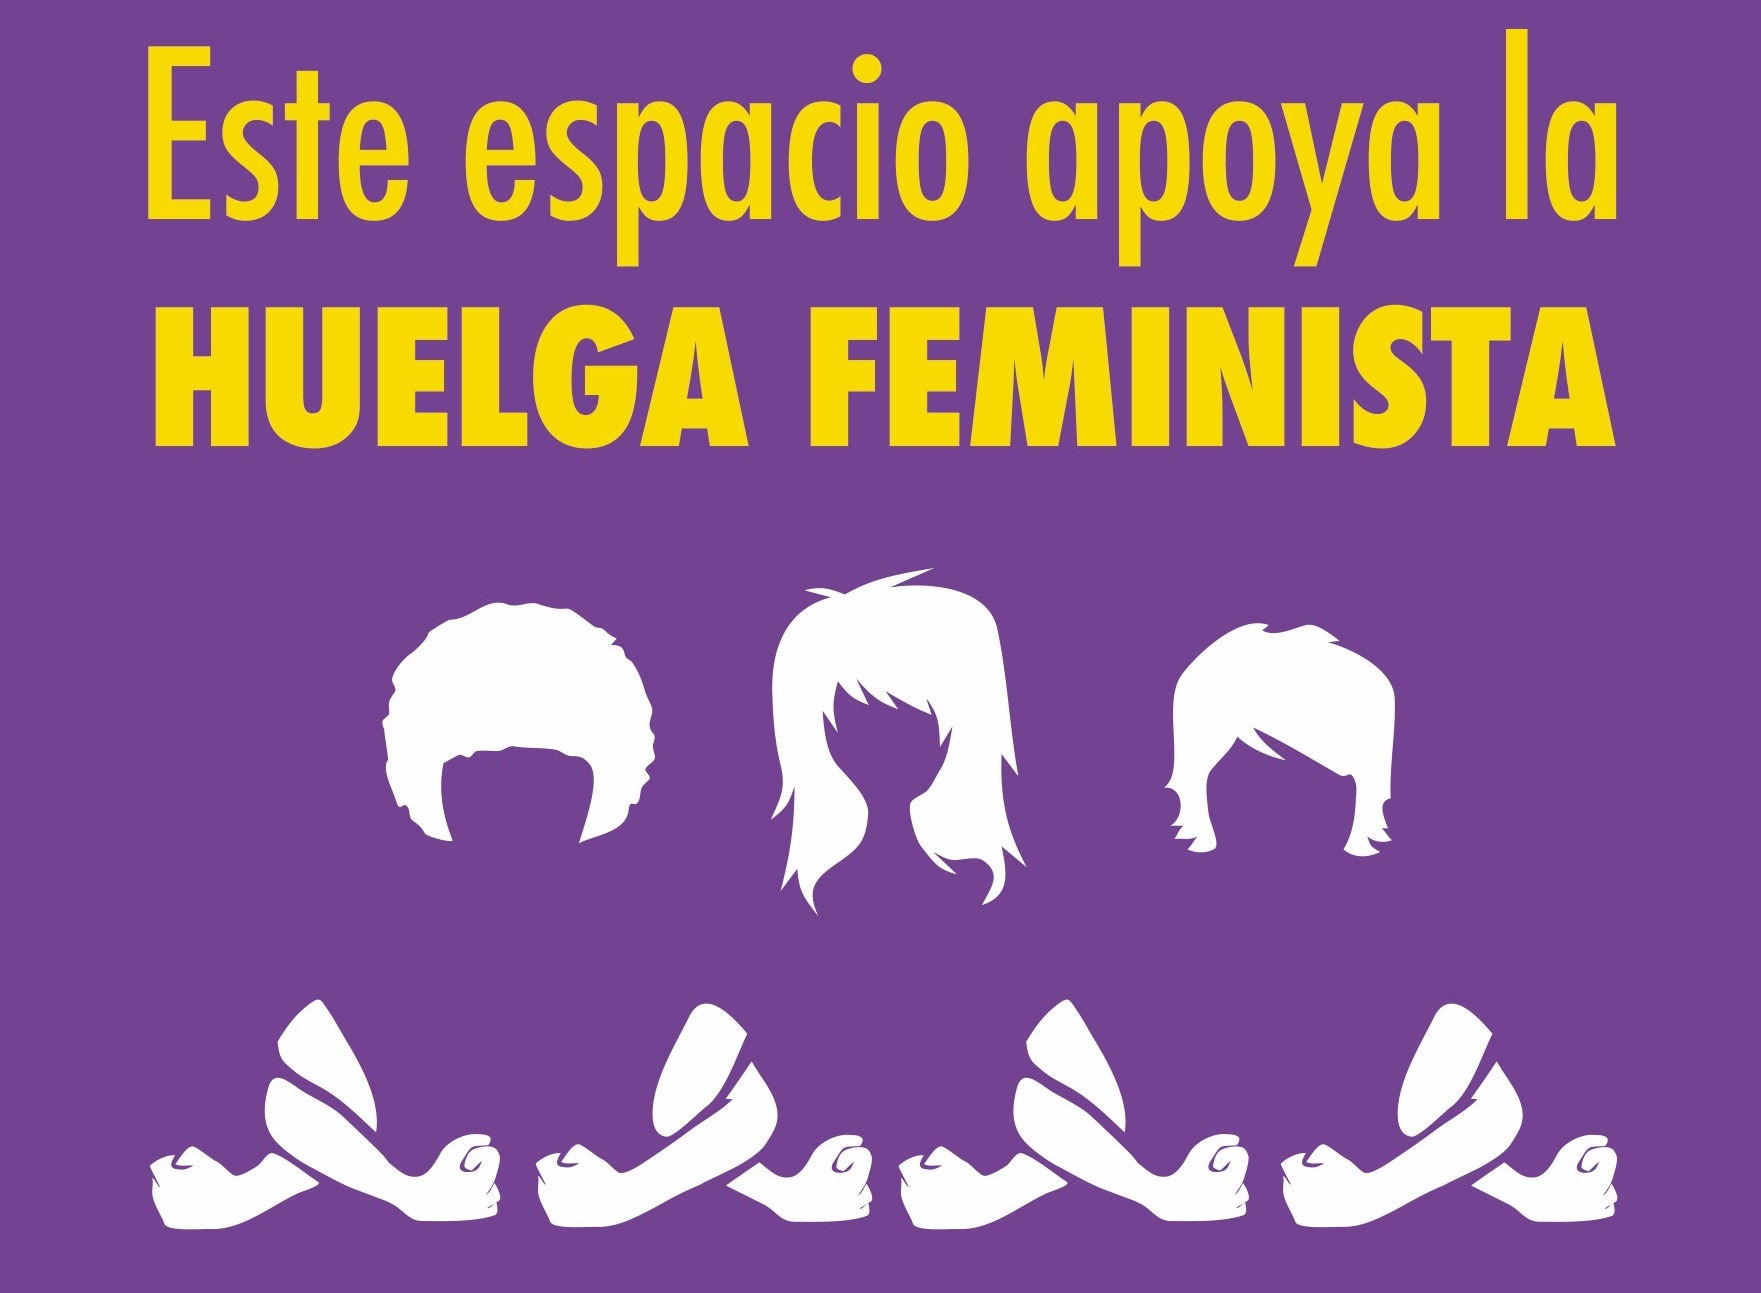 Asociación Realidades apoya la huelga feminista